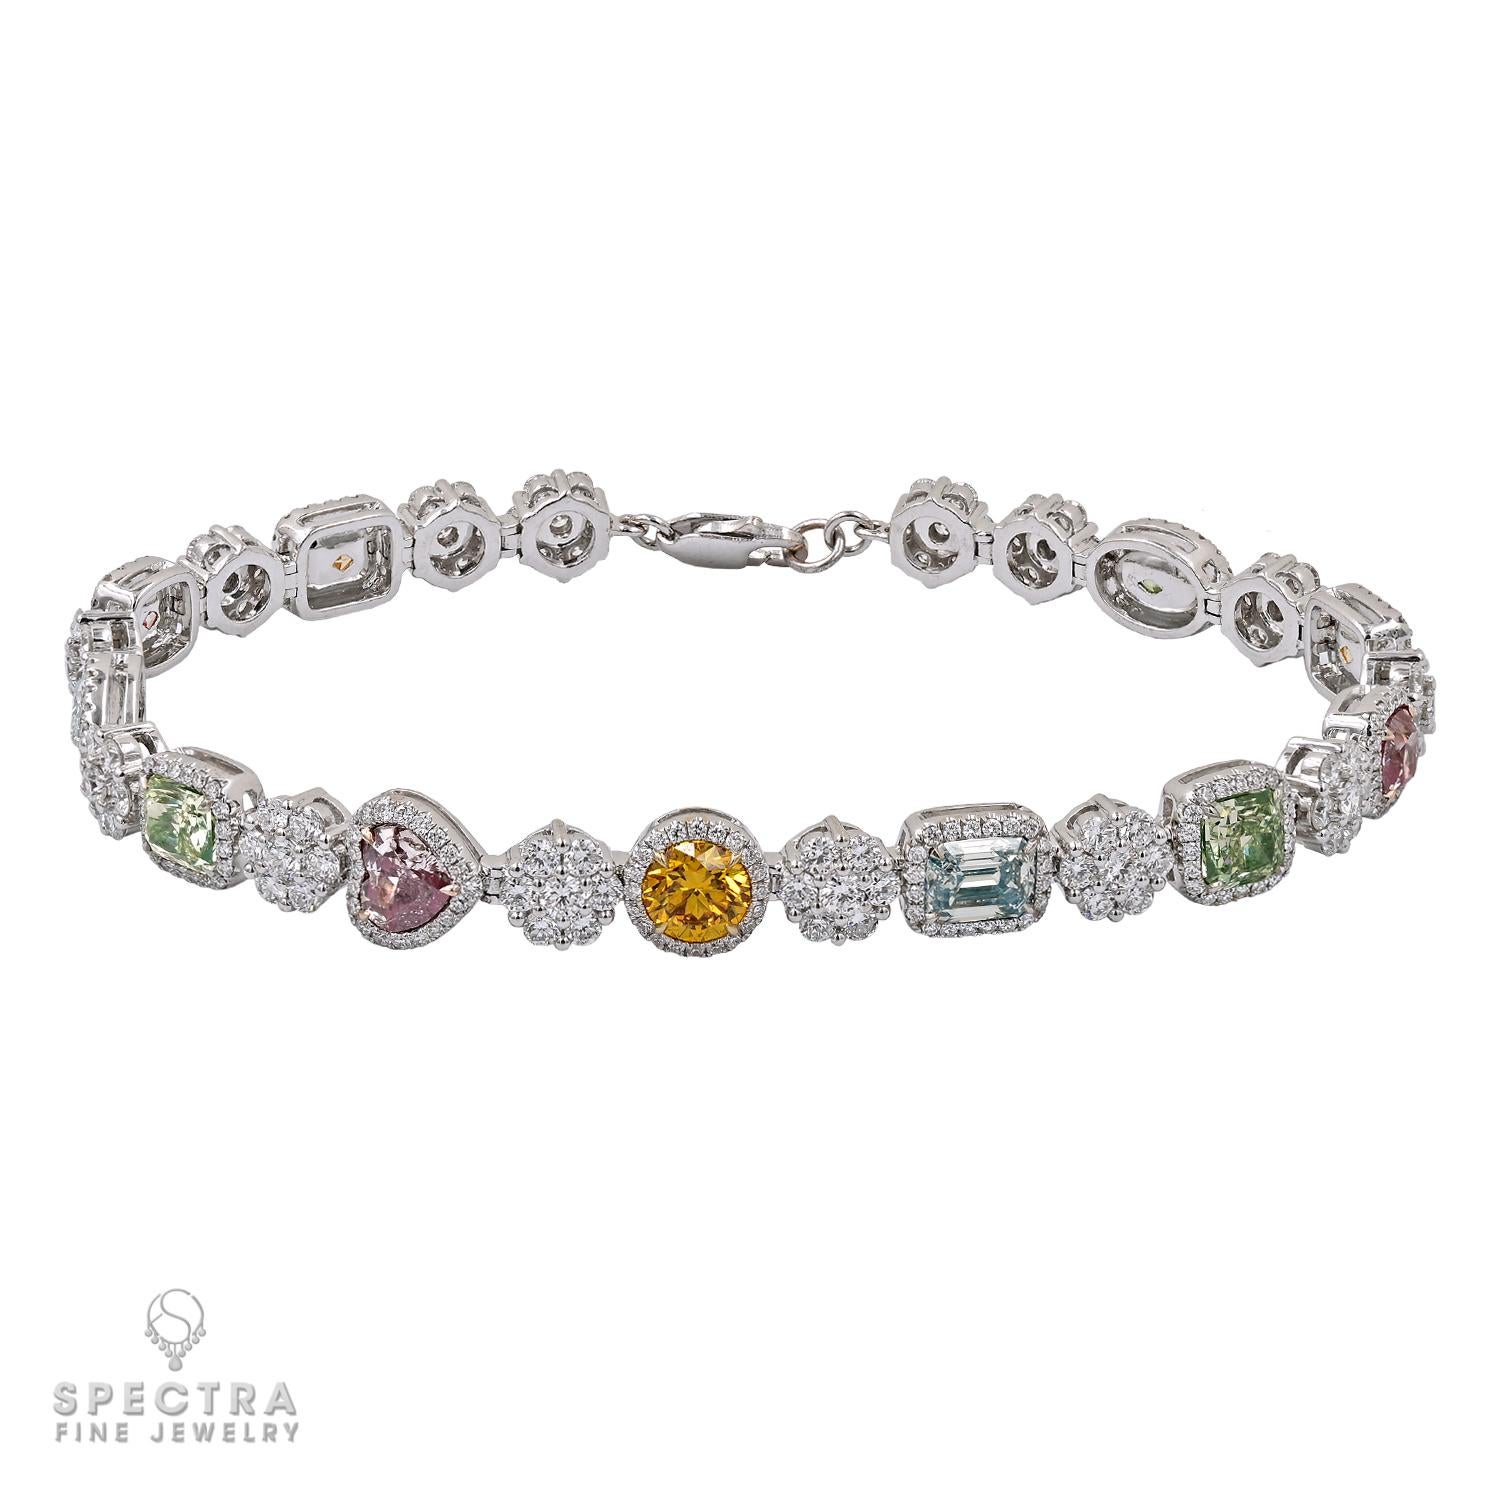 Ce charmant bracelet est orné d'une étonnante gamme de pierres précieuses, comprenant 11 diamants colorés de forme mixte, disposés de manière complexe, pesant collectivement 5,85 carats. Chaque diamant est soigneusement sélectionné, mettant en